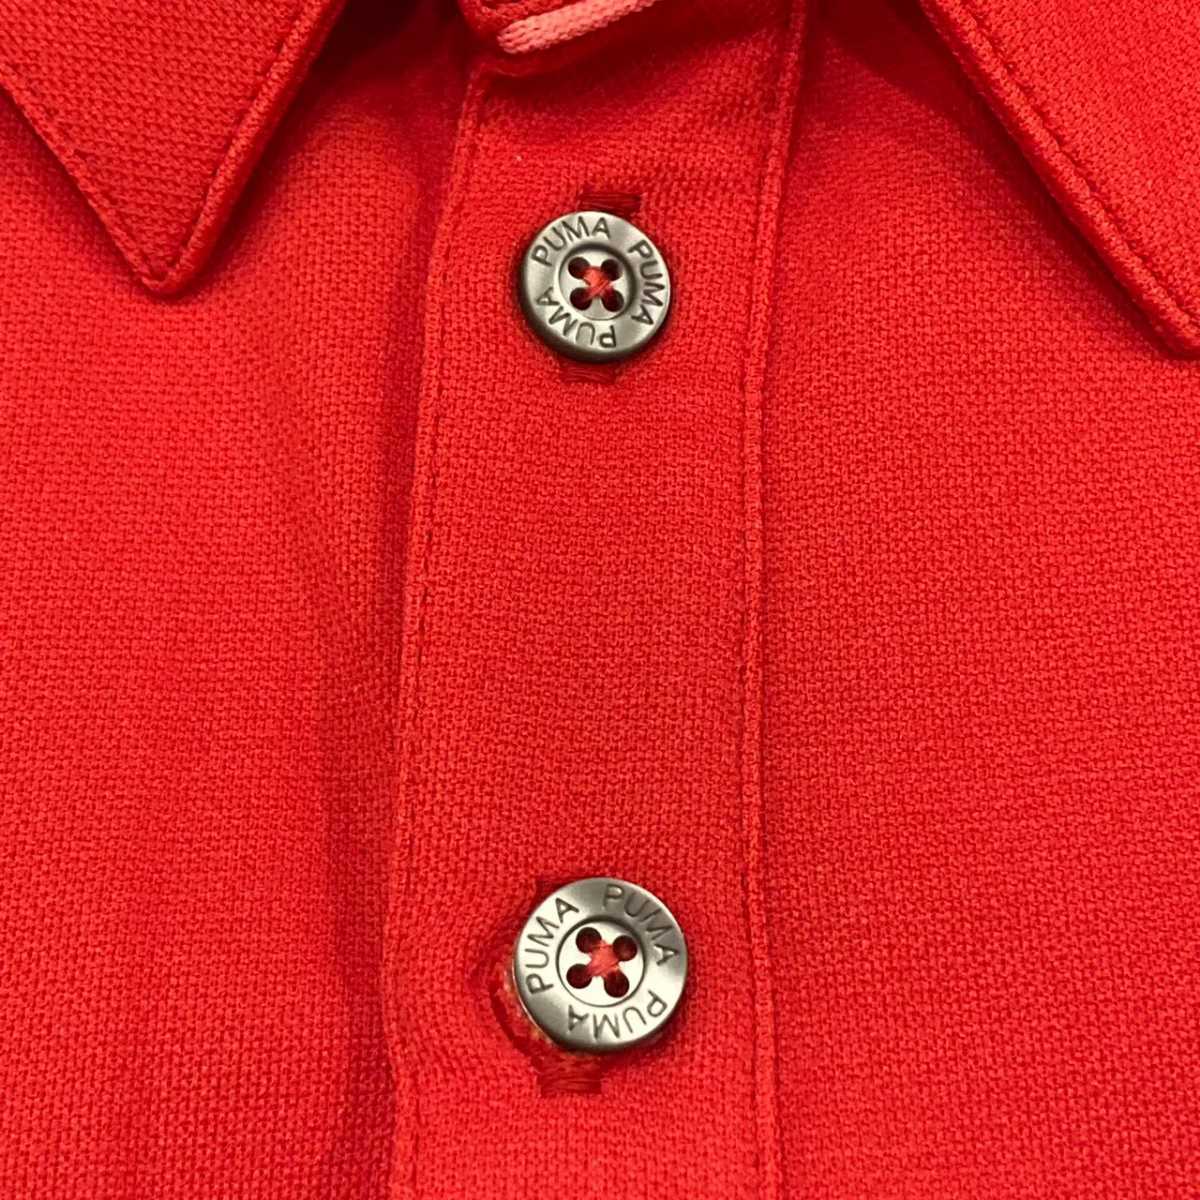 プーマ PUMA ゴルフ ポロシャツ golf 赤色 メンズ Tシャツ 派手